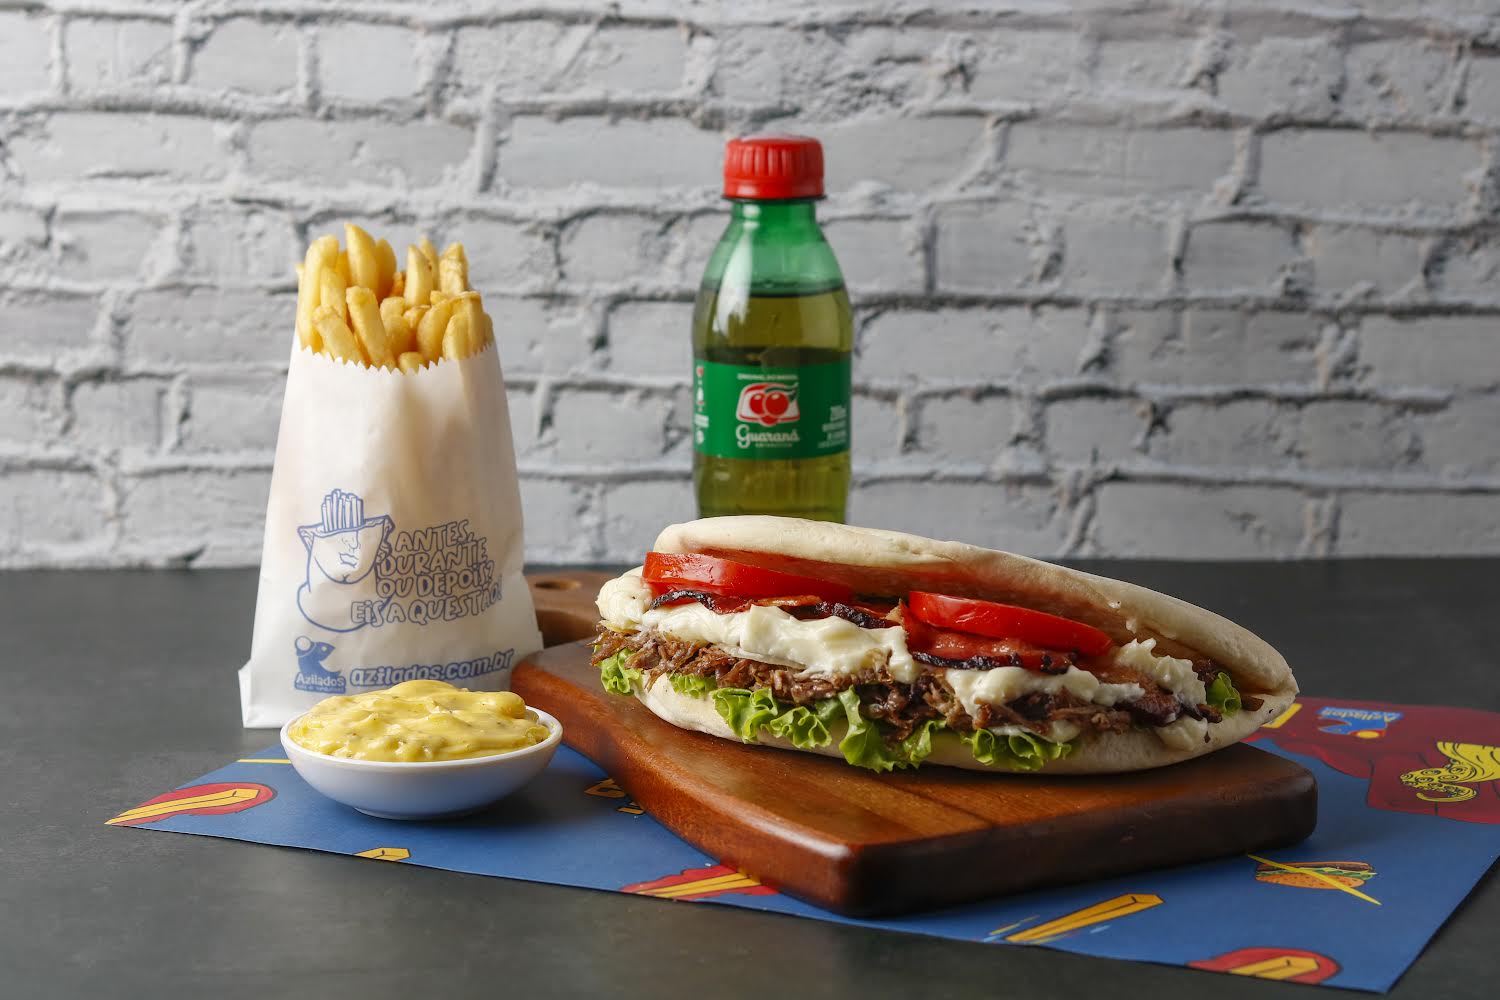 noticia Celebração Arretada: Dia do Nordestino com sanduíche em dobro no Azilados 